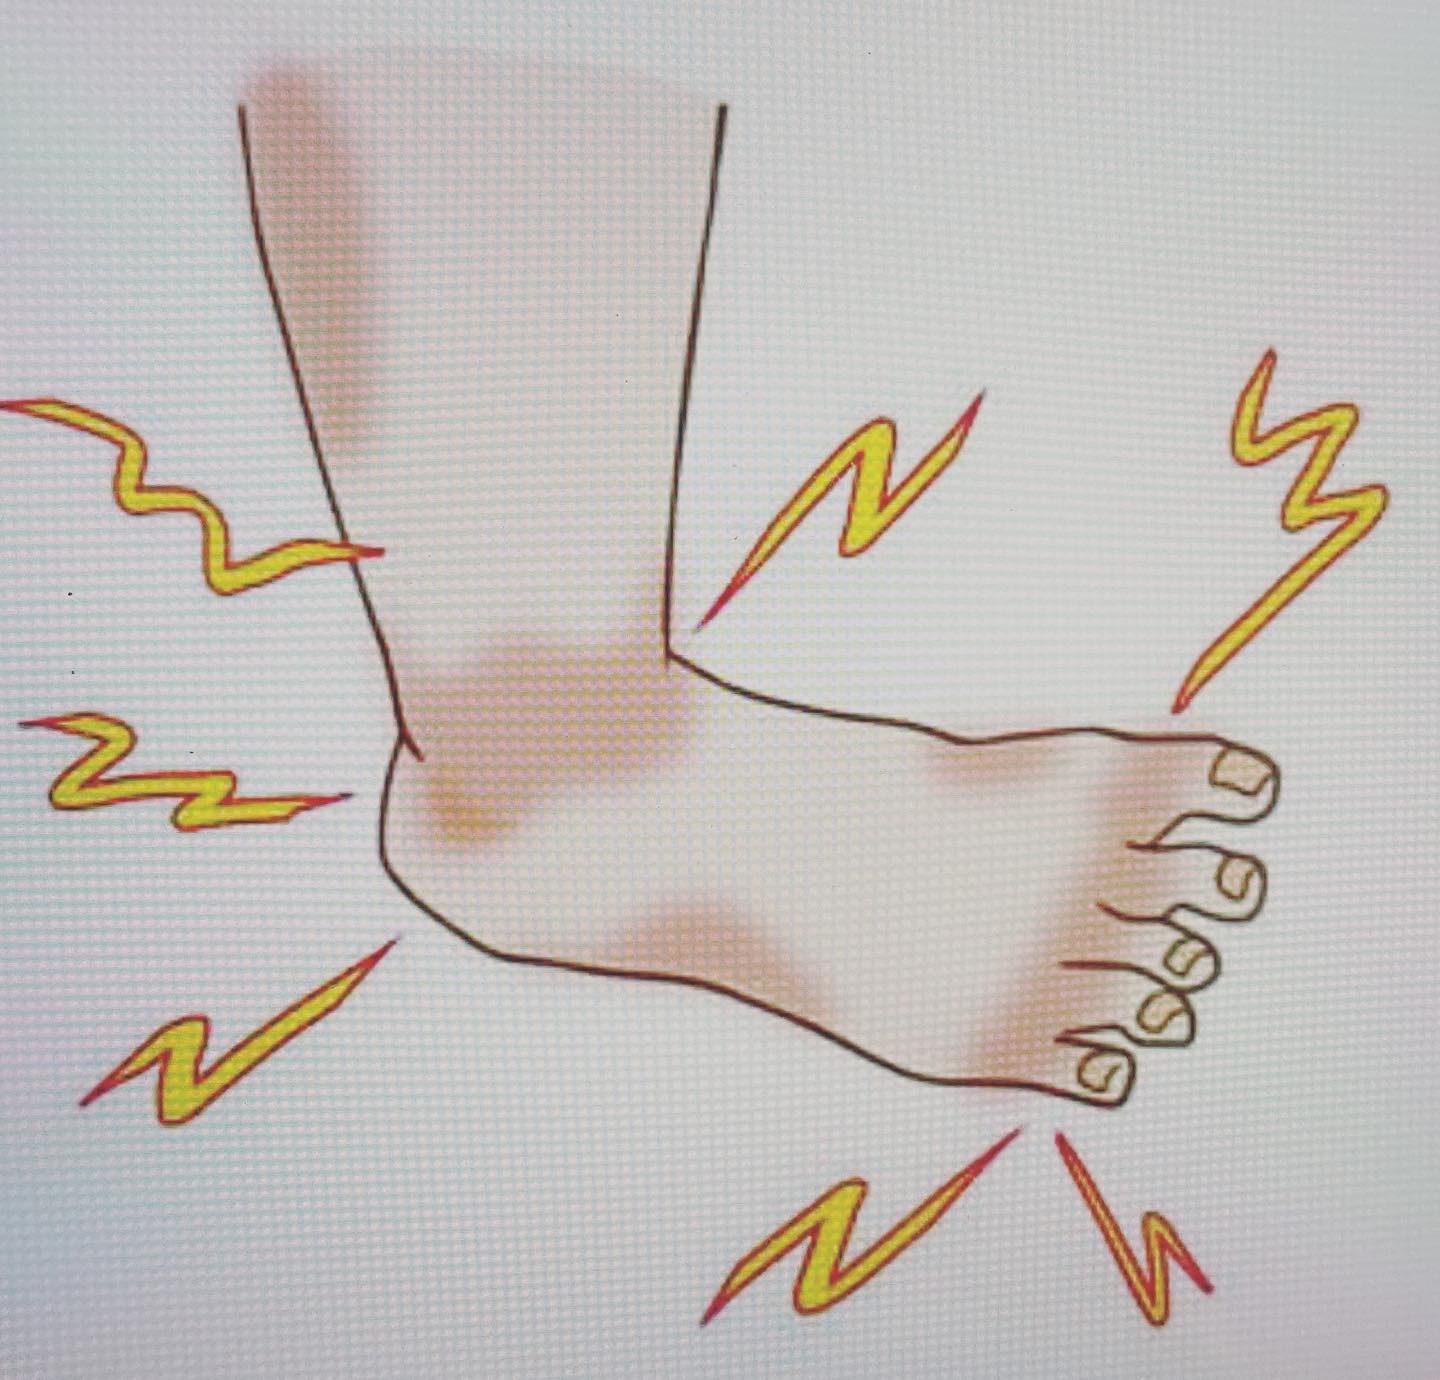 #足の裏、かかとが痛い原因#足底腱膜炎足底筋膜は足底にある膜で、足のアーチを保つ重要な組織です。立って足に体重がかかると、足底筋膜に負荷がかかります。長時間の立ち仕事、体重増加、スポーツによる過大な負荷などで痛むようになると考えられます。